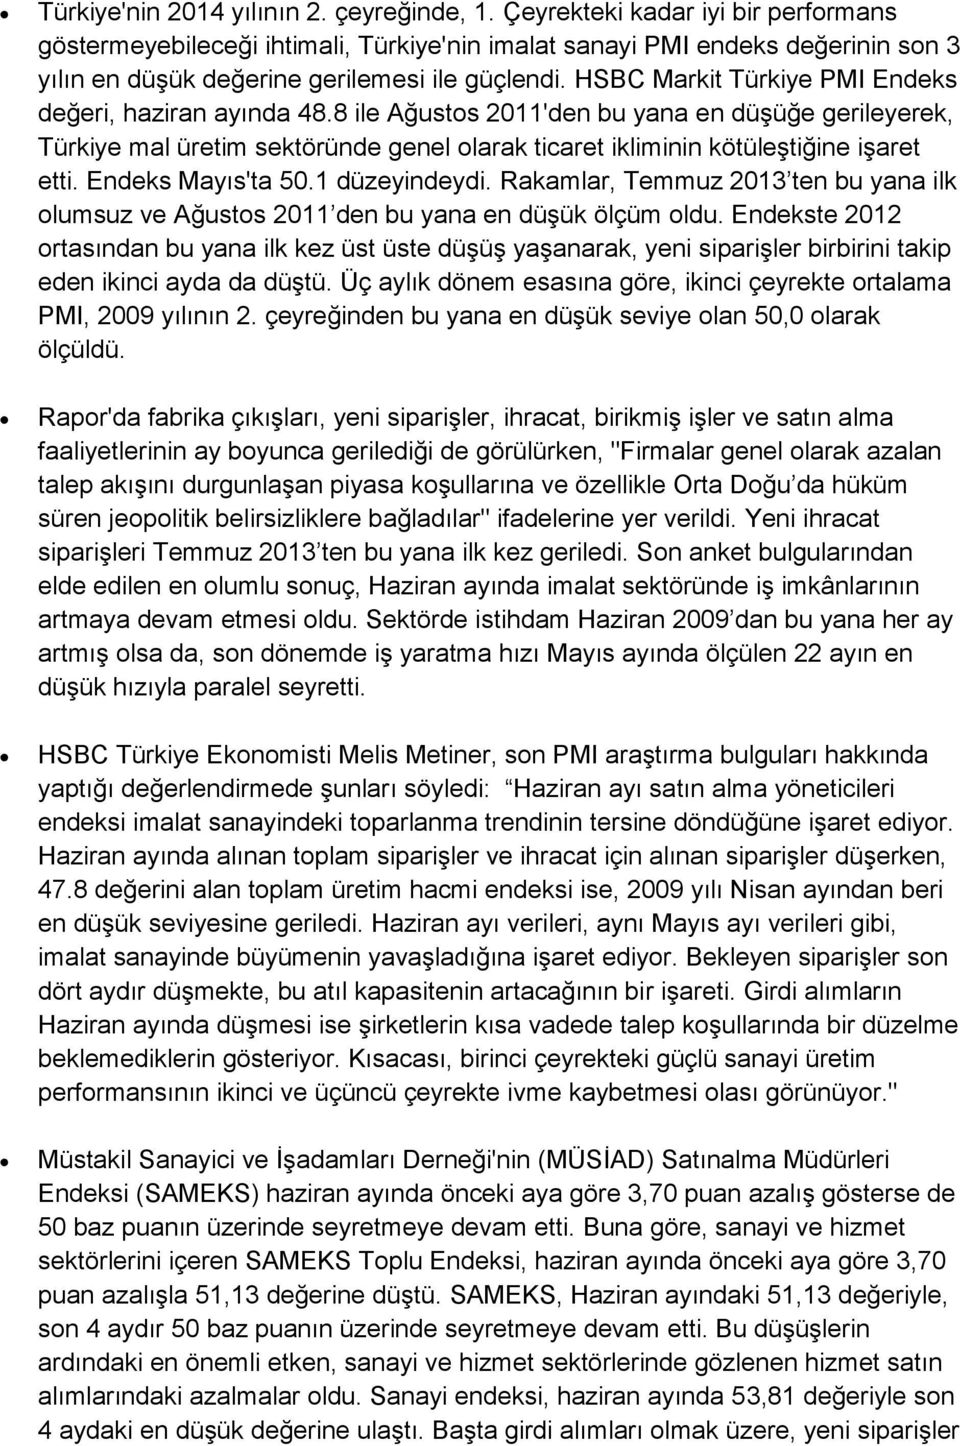 HSBC Markit Türkiye PMI Endeks değeri, haziran ayında 48.8 ile Ağustos 2011'den bu yana en düşüğe gerileyerek, Türkiye mal üretim sektöründe genel olarak ticaret ikliminin kötüleştiğine işaret etti.